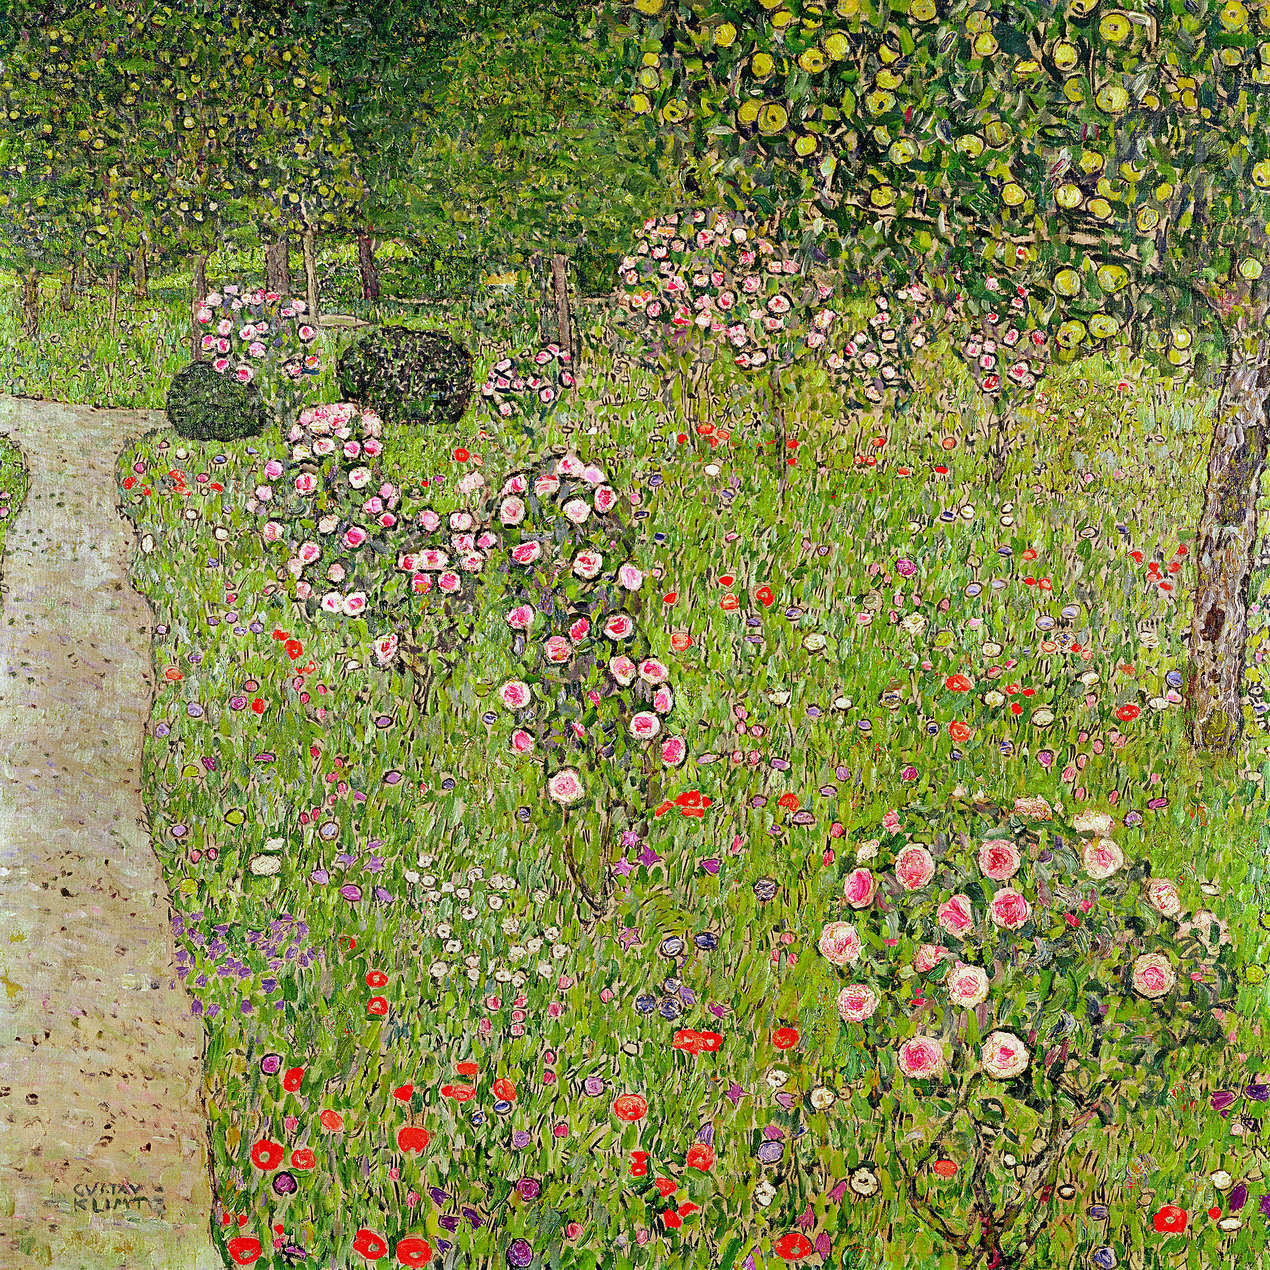             Fototapete "Obstgarten mit Rosen" von Gustav Klimt
        